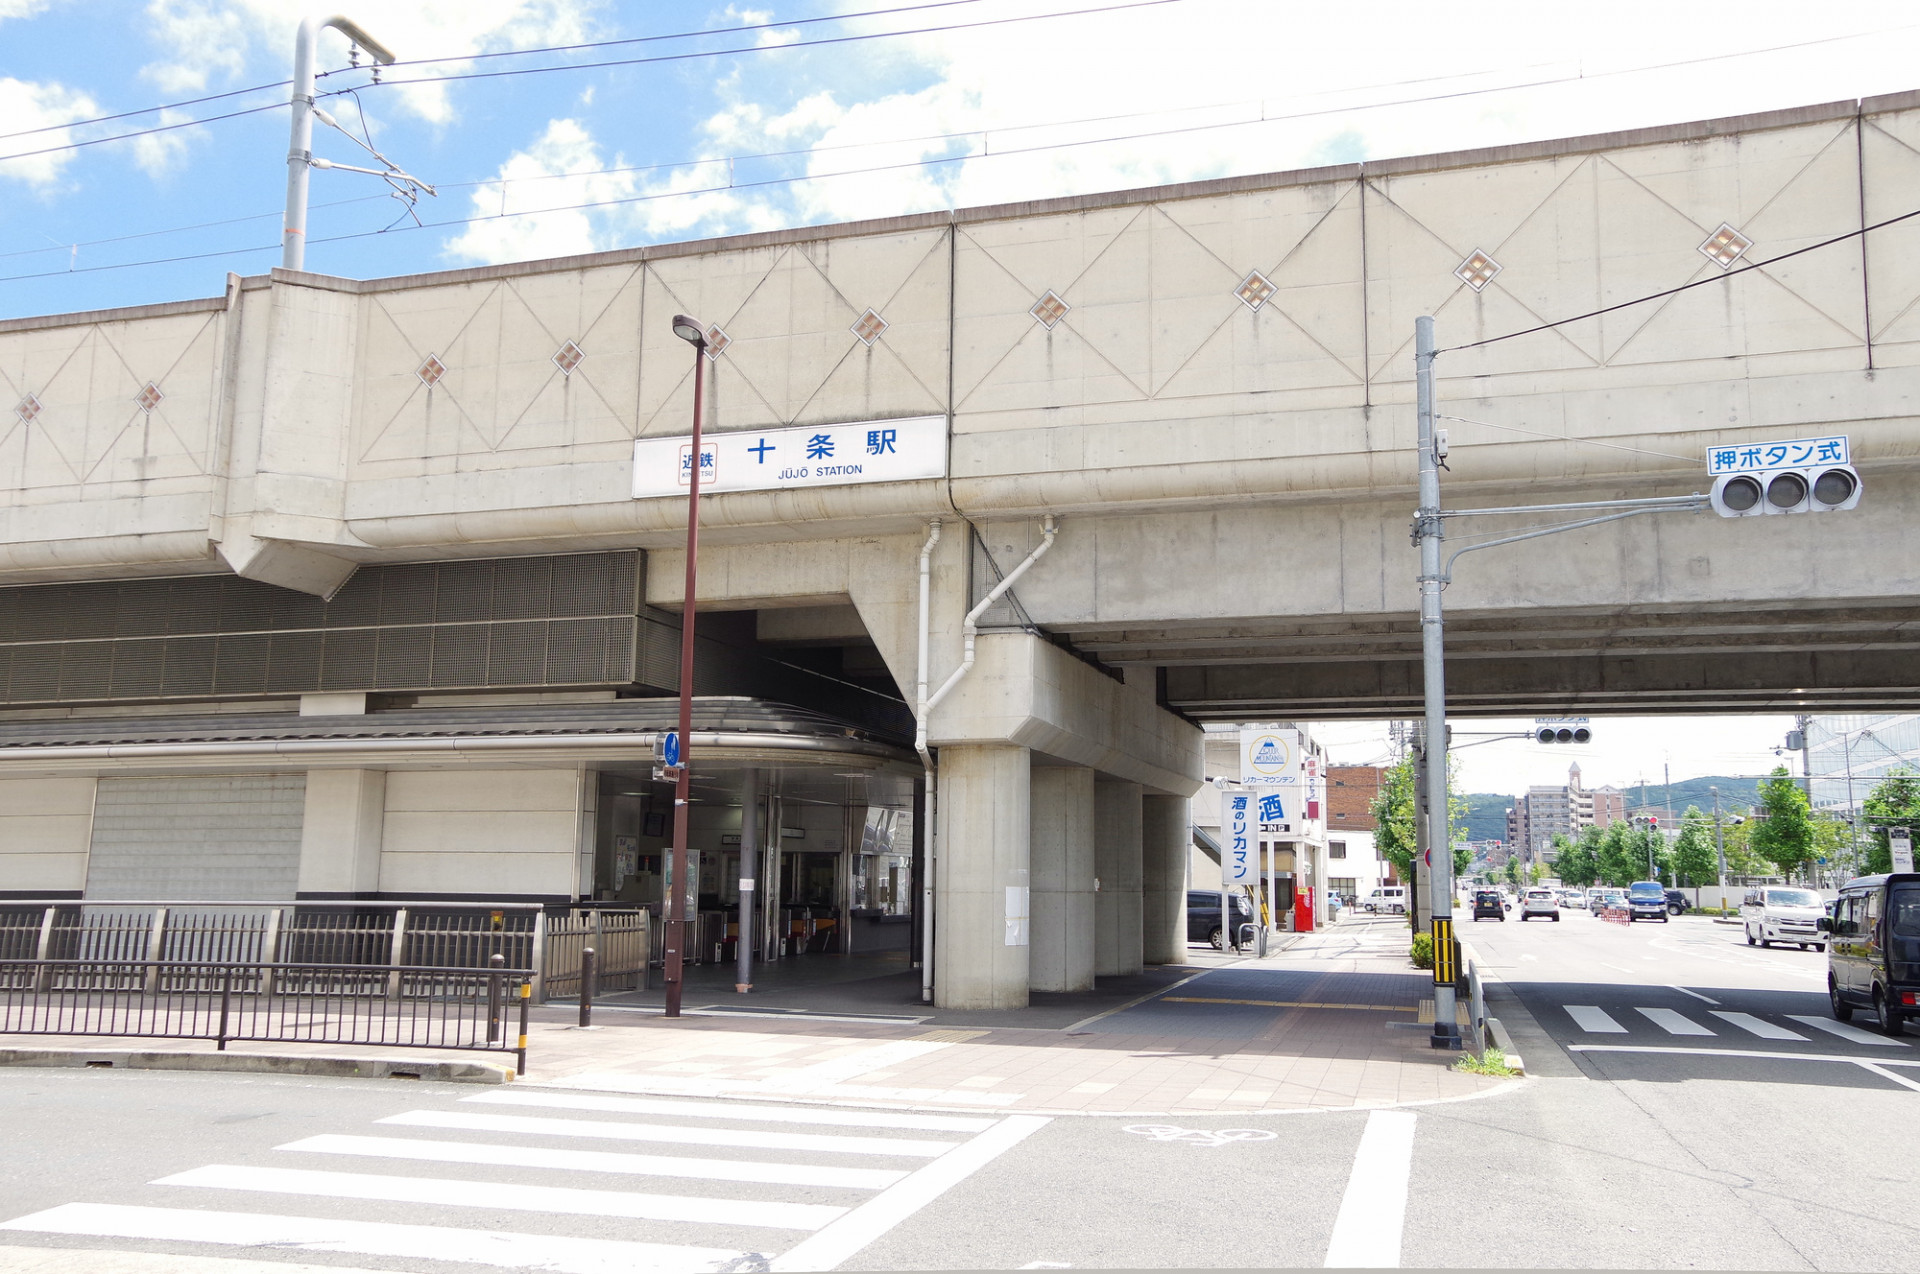 ランチが評判の京都市のお店は駅から徒歩にてアクセスできます